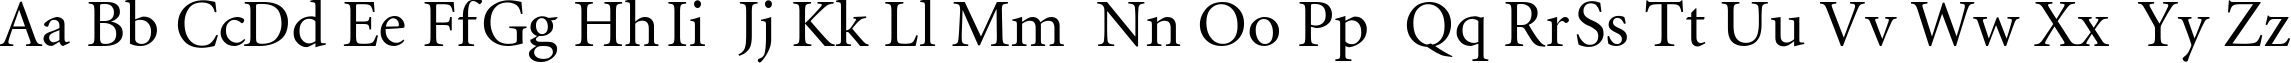 Пример написания английского алфавита шрифтом MinionCyr-Regular